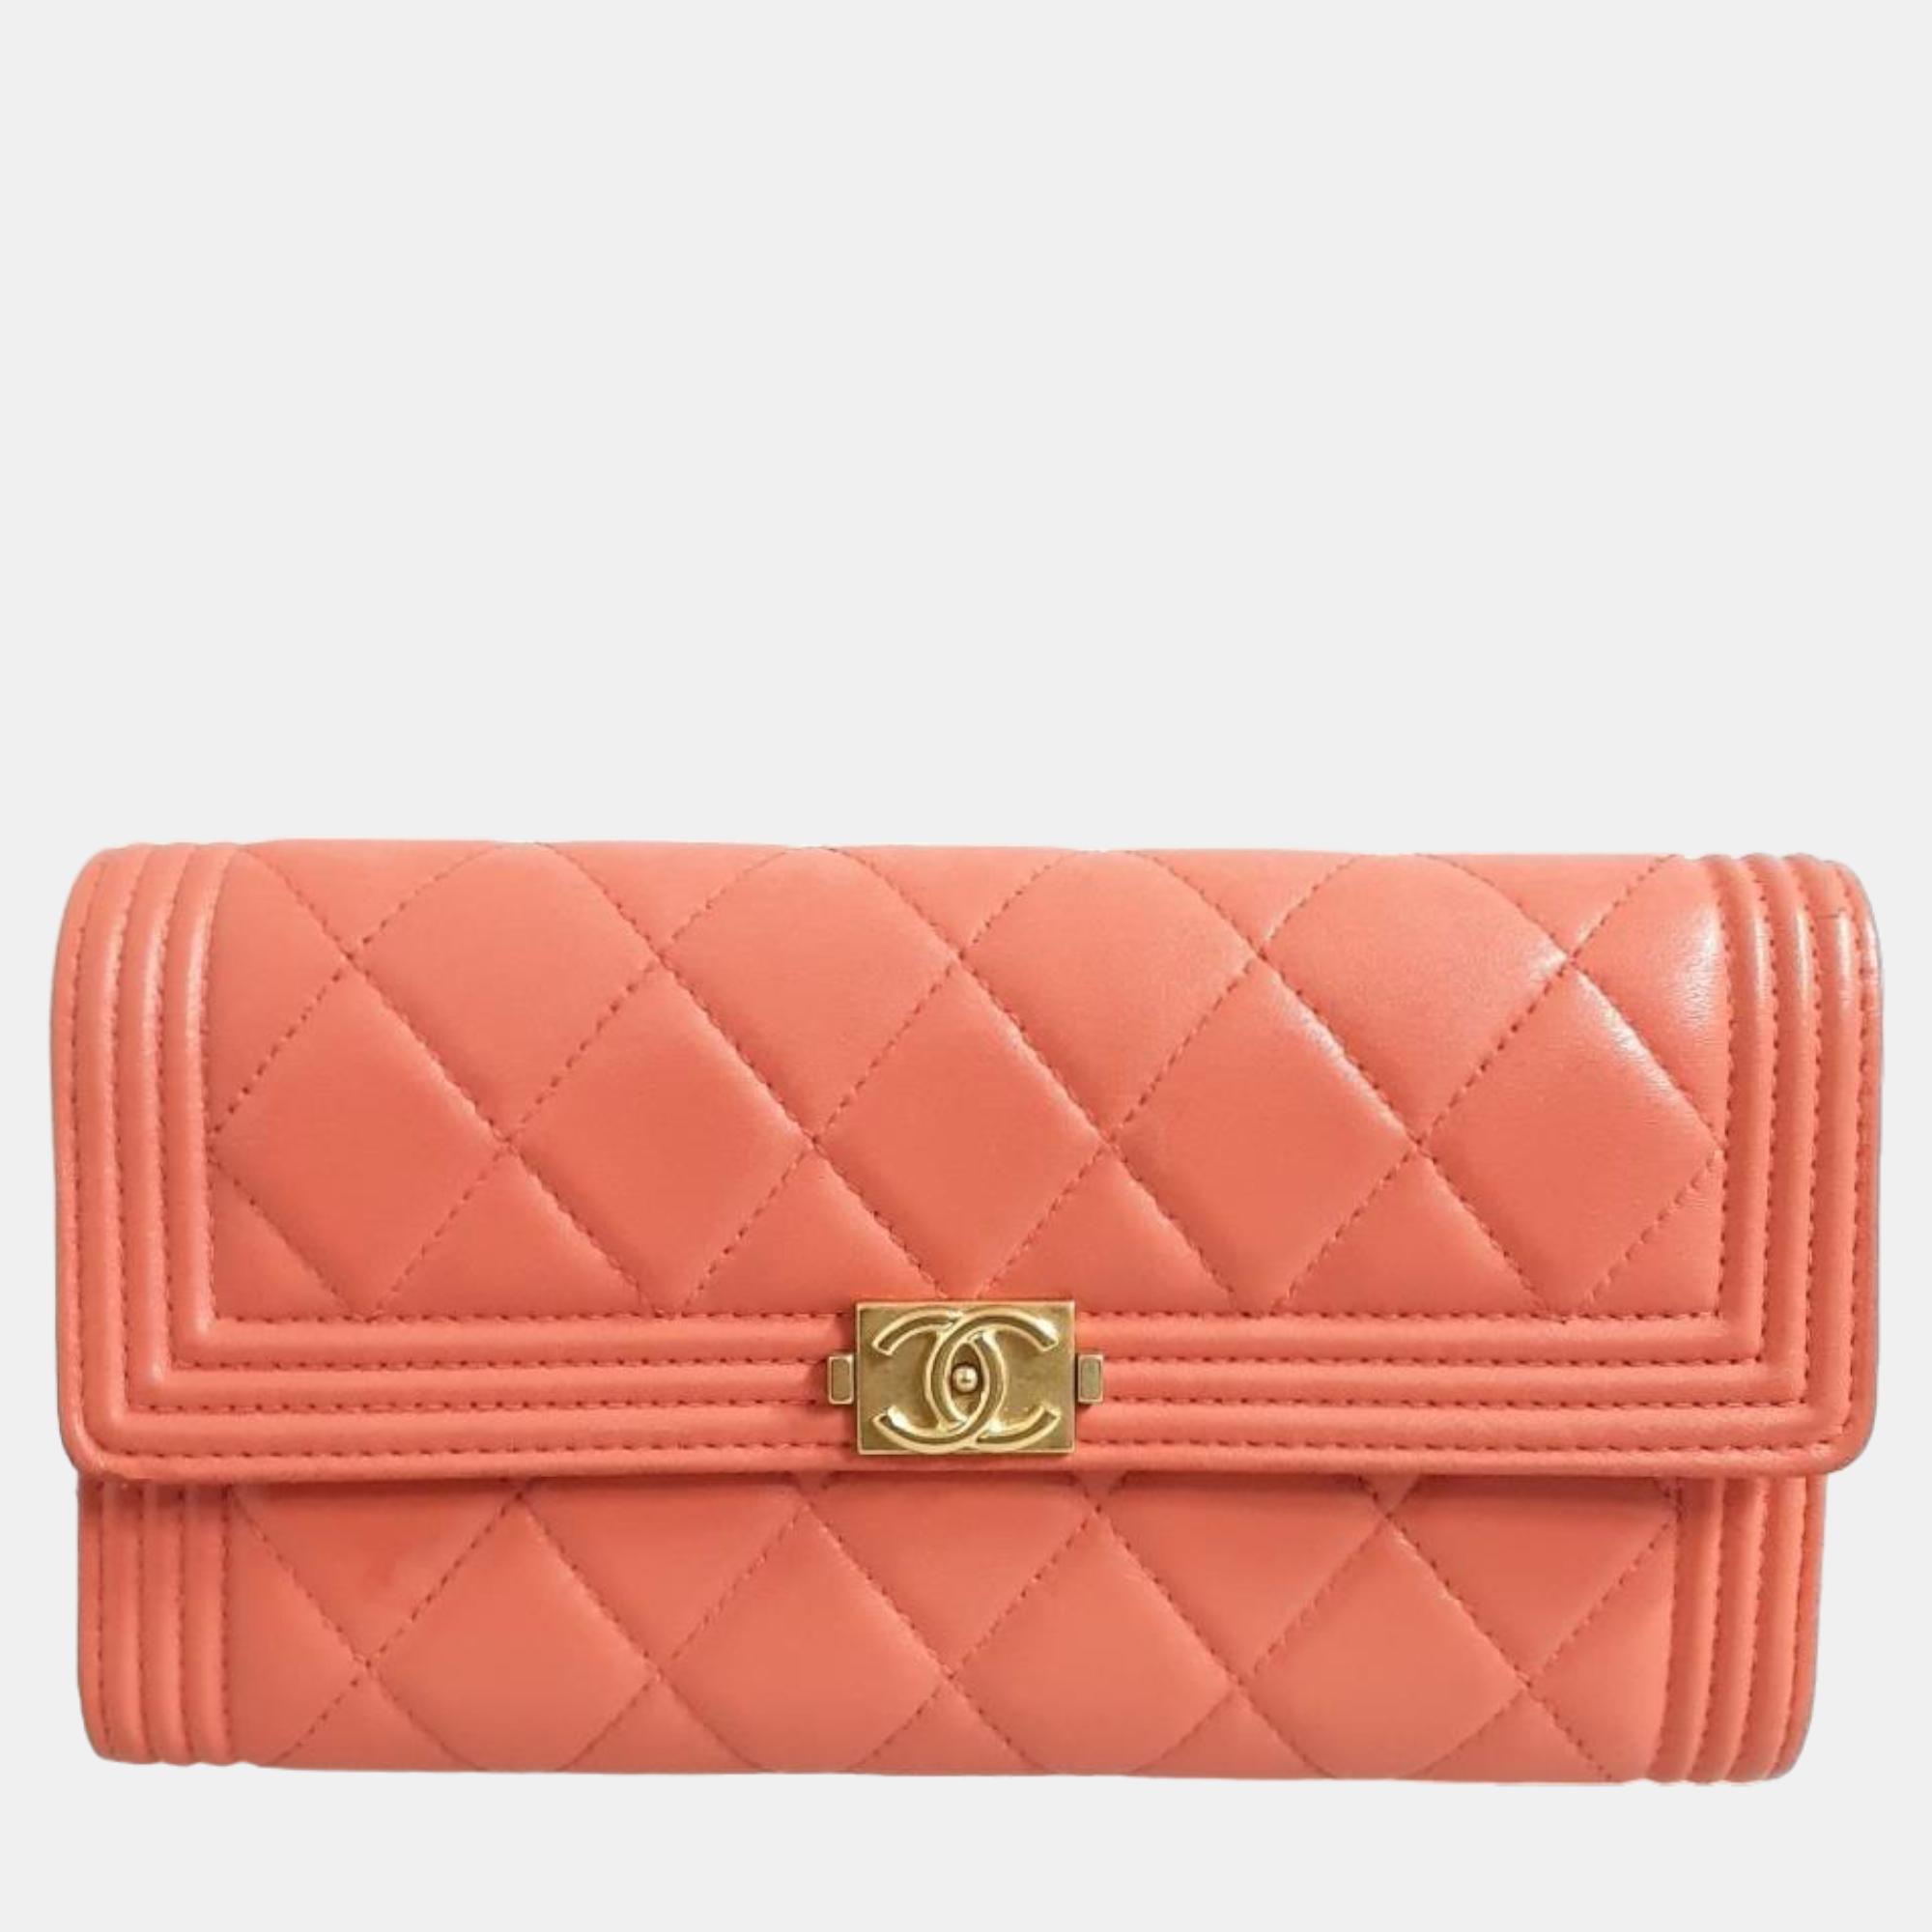 Chanel Orange Lambskin Boy Long Wallet